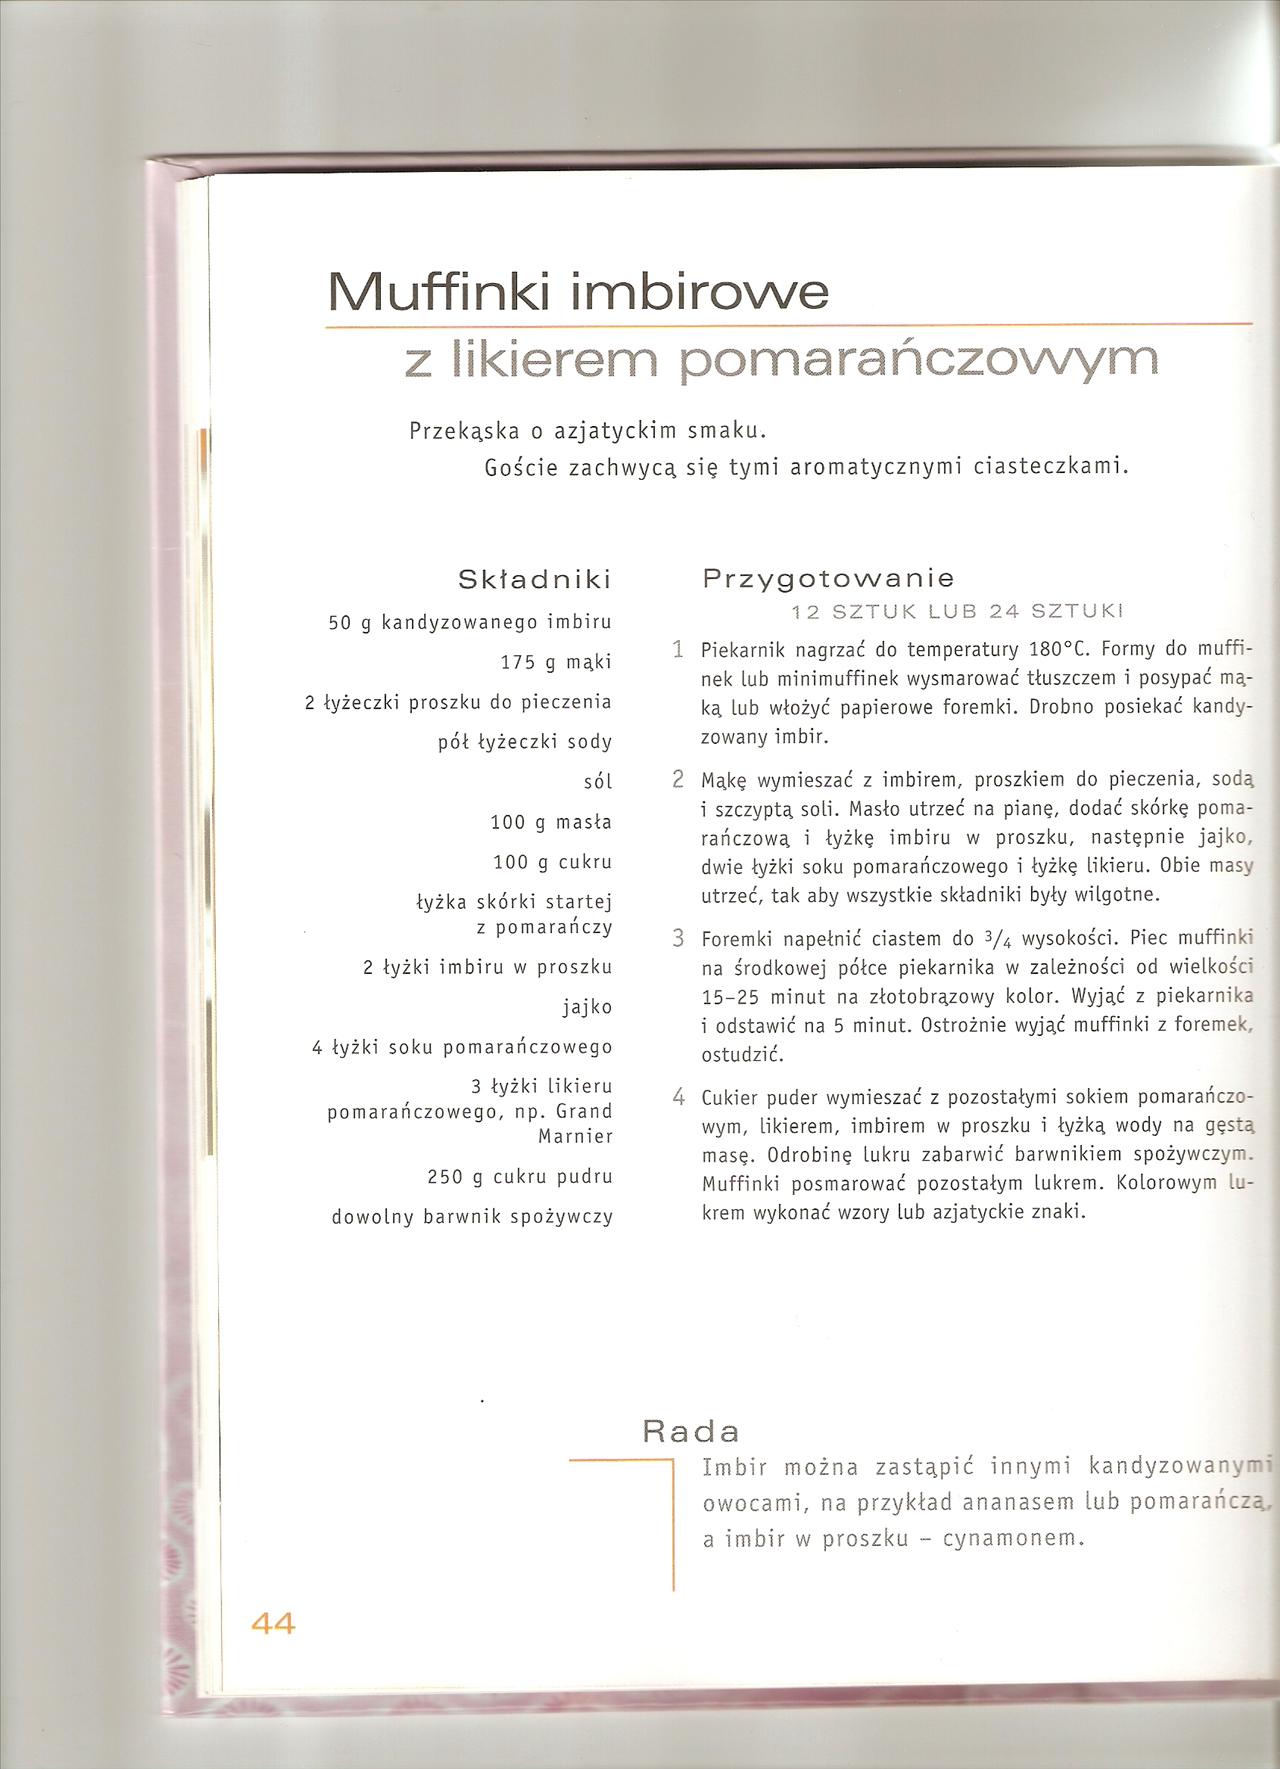 Muffinki - 044 Muffinki imbirowe z likierem pomaranczowym.jpg